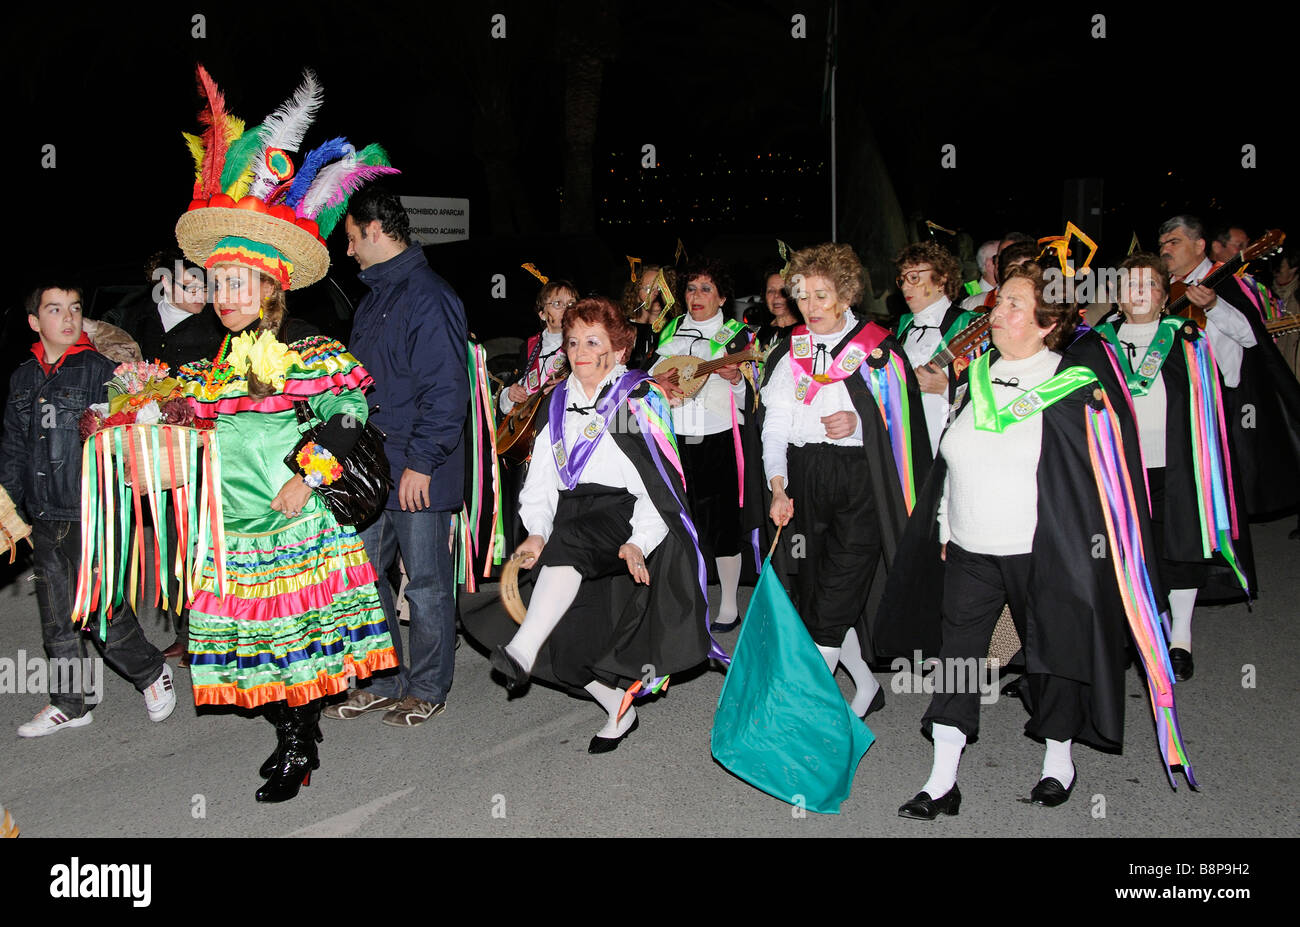 La danse de carnaval et de musiciens dans la ville espagnole de La Herradura, sur la côte tropicale du sud de l'Espagne Banque D'Images